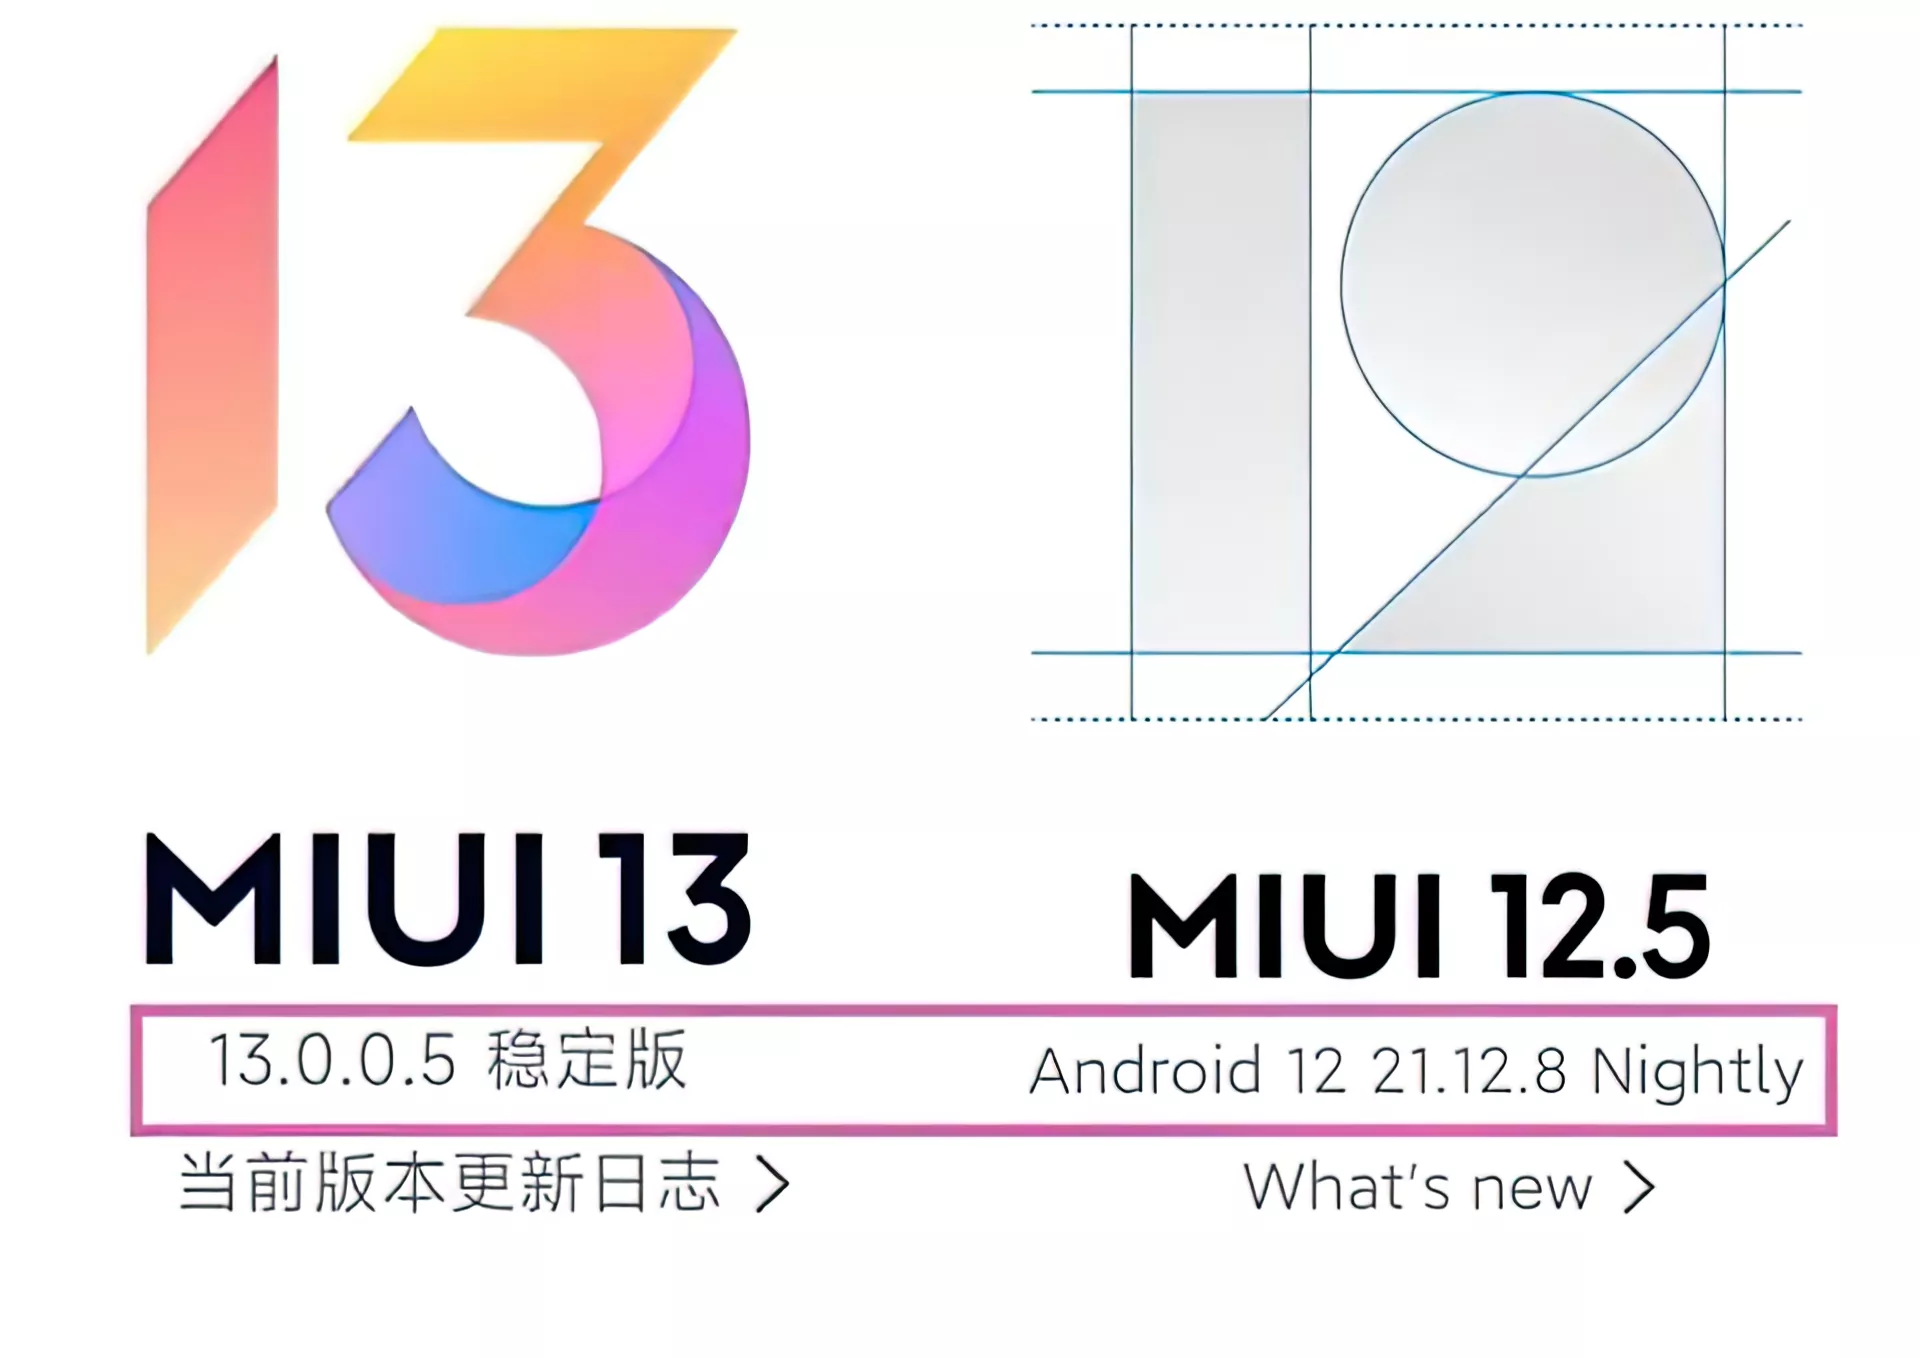 Логотип MIUI 13 появился в сети